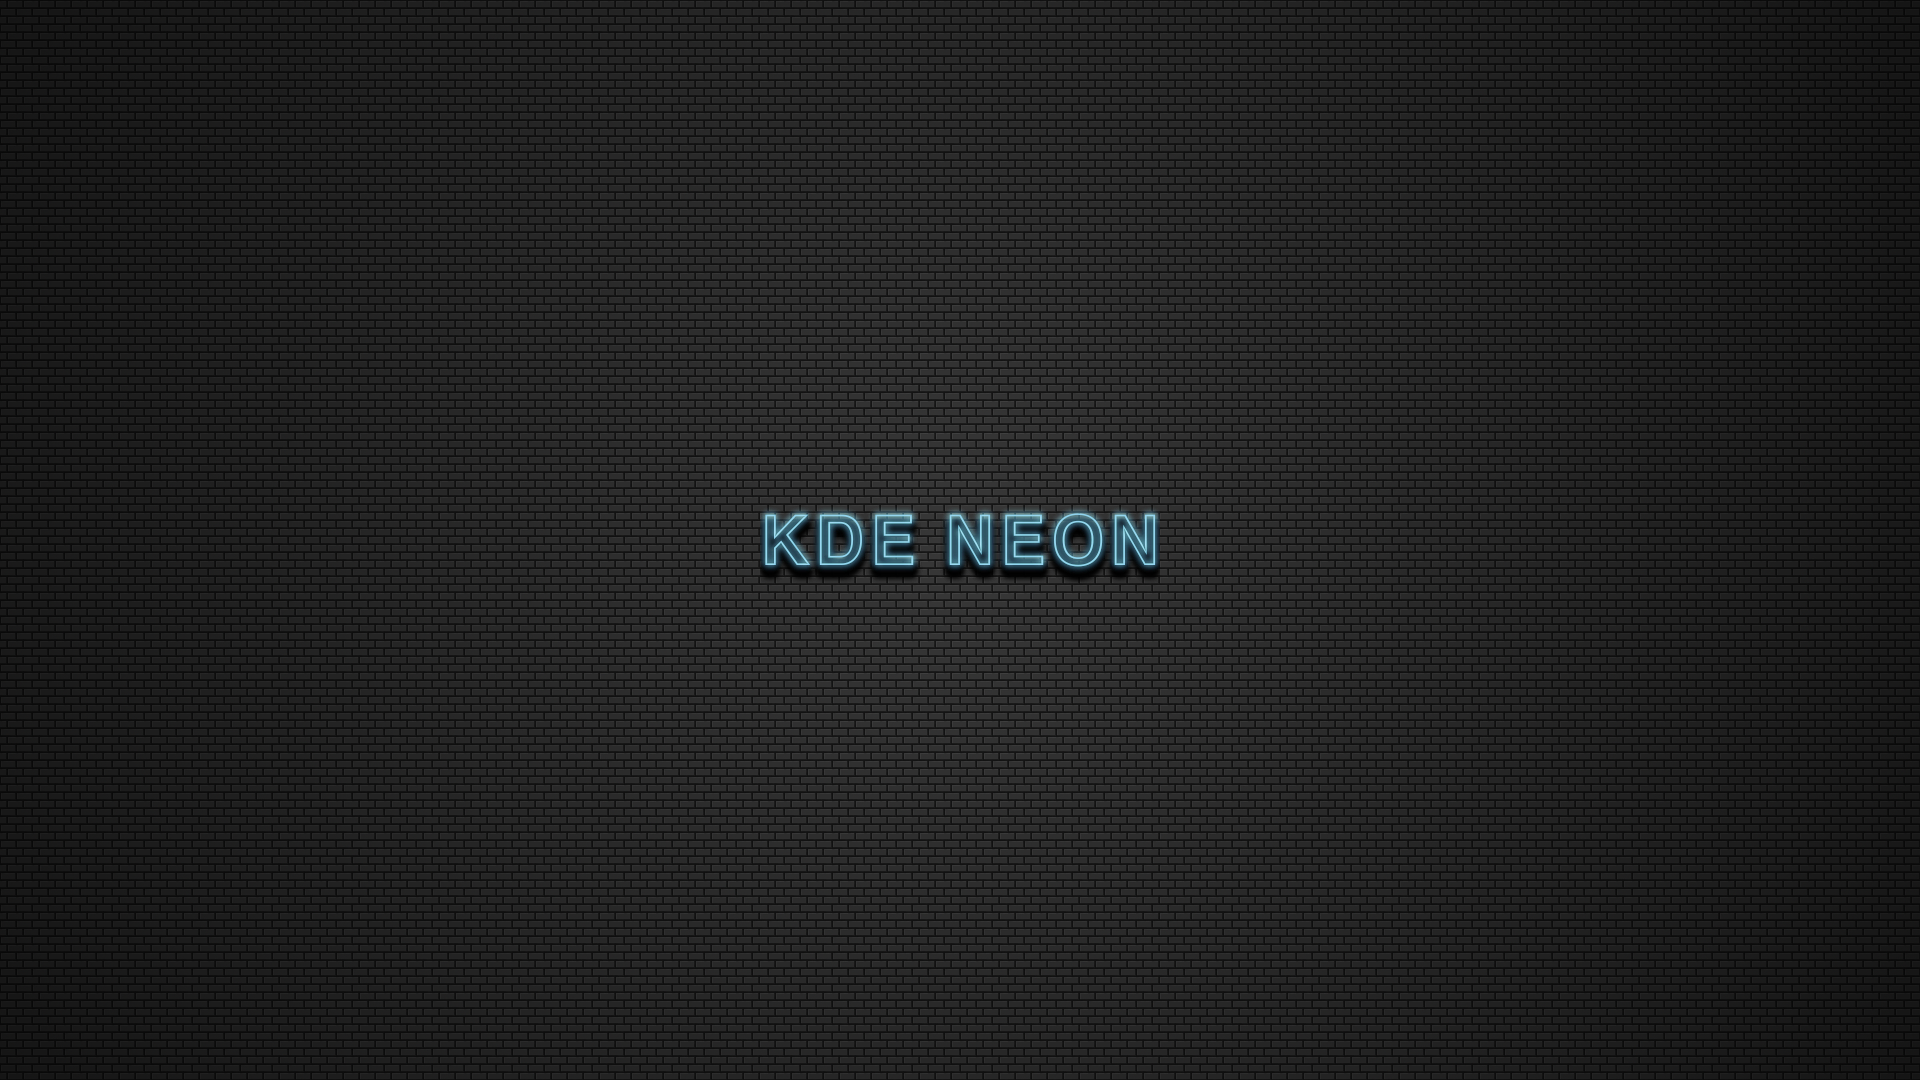 KDE NEON WALLPAPER